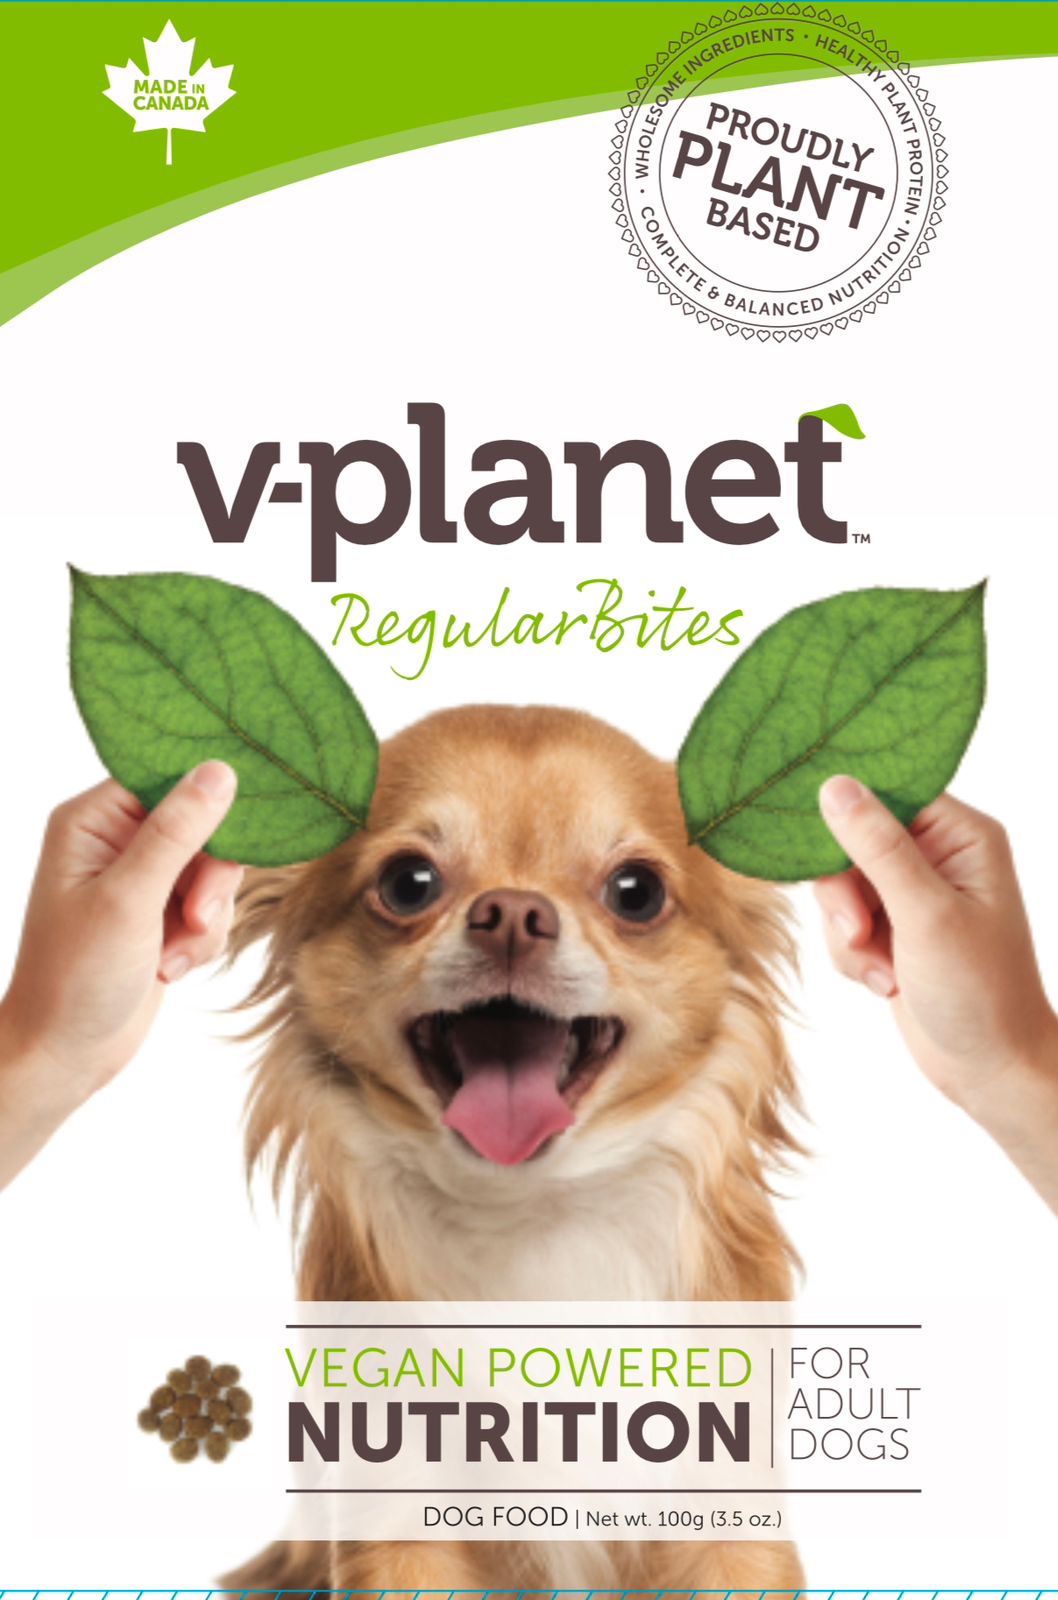 V-planet Regular Kibble Sample pack! (FREE Delivery)